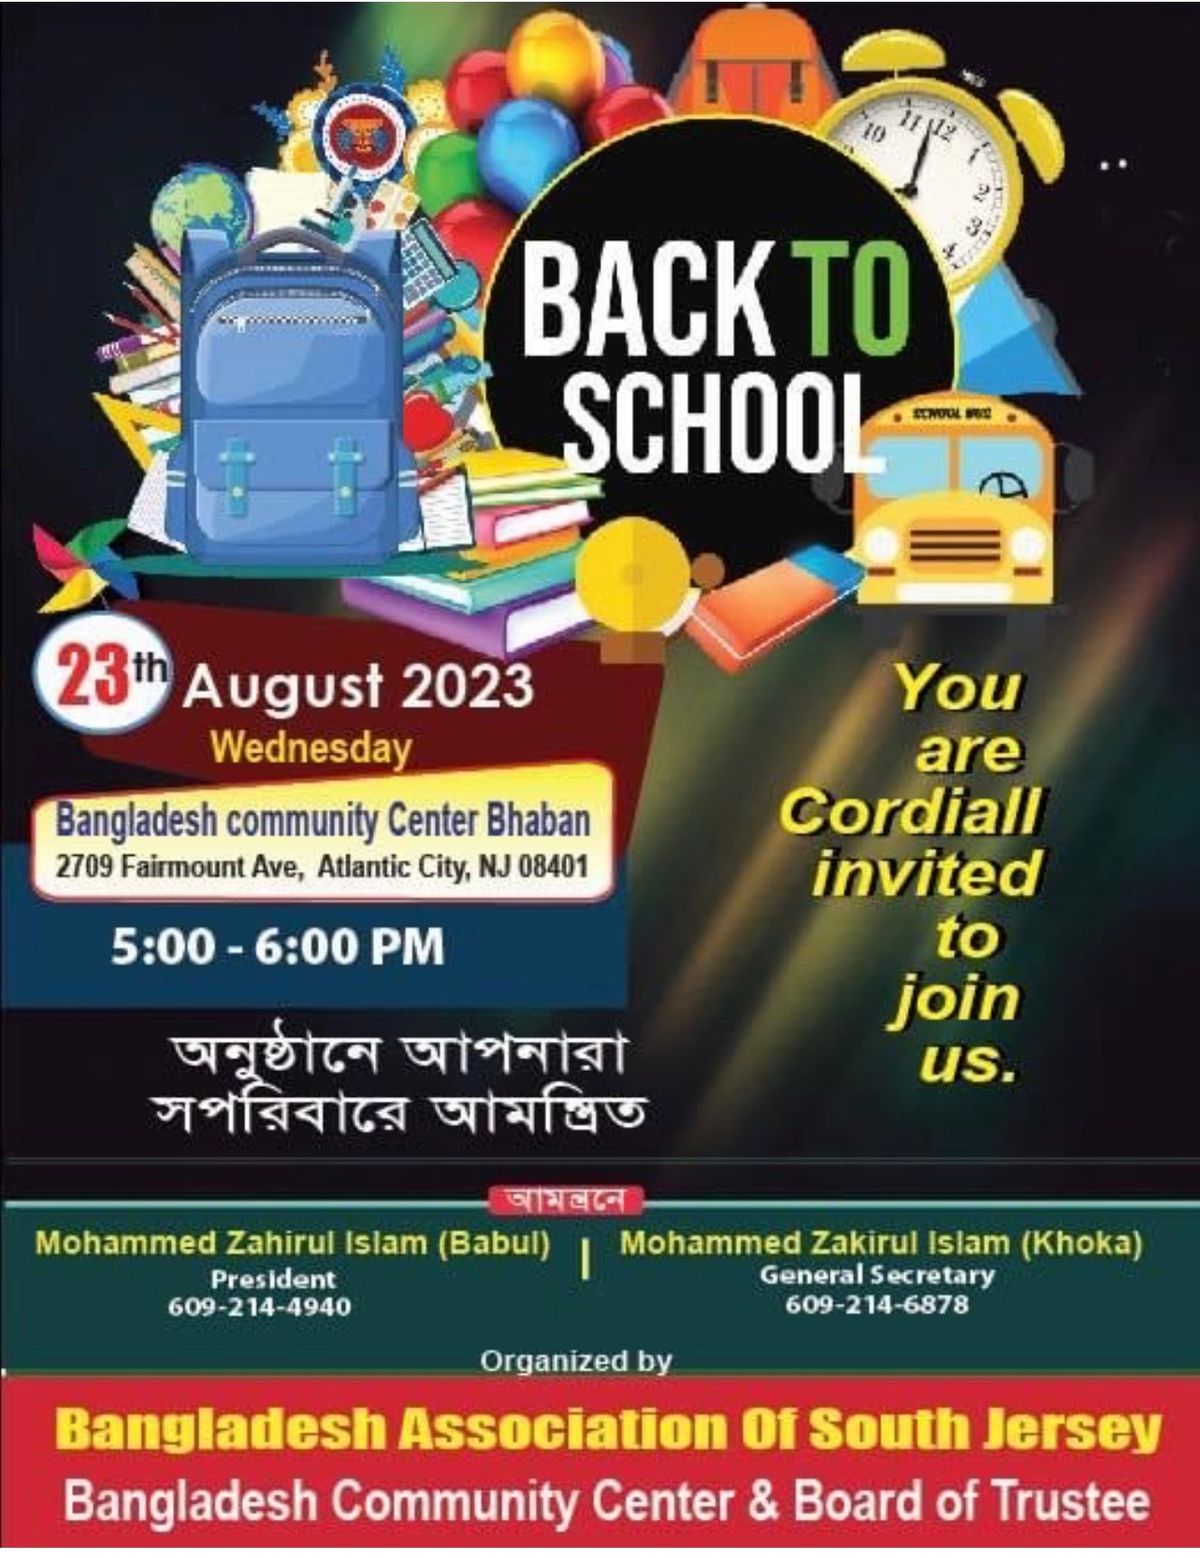 বাংলাদেশ অ্যাসোসিয়েশন অফ সাউথ জার্সি বিনামূল্যে স্কুলের সামগ্রী বিতরণ করবে Bangladesh Association of South Jersey to Distribute Free School Supplies